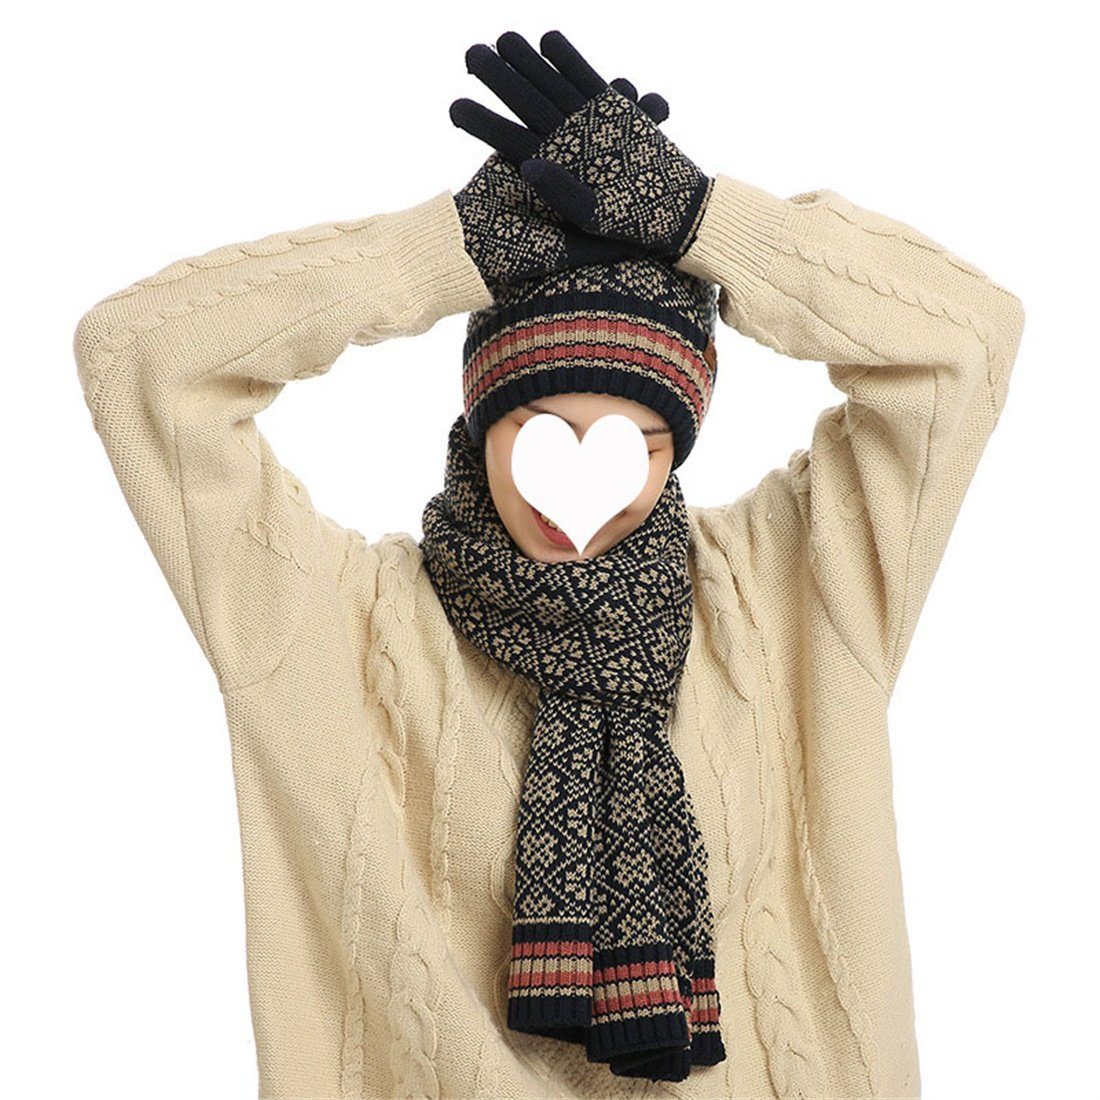 DÖRÖY Strickmütze Unisex Winter Vintage Wollmütze, Mütze, Schal, Handschuhe 3er Set blau